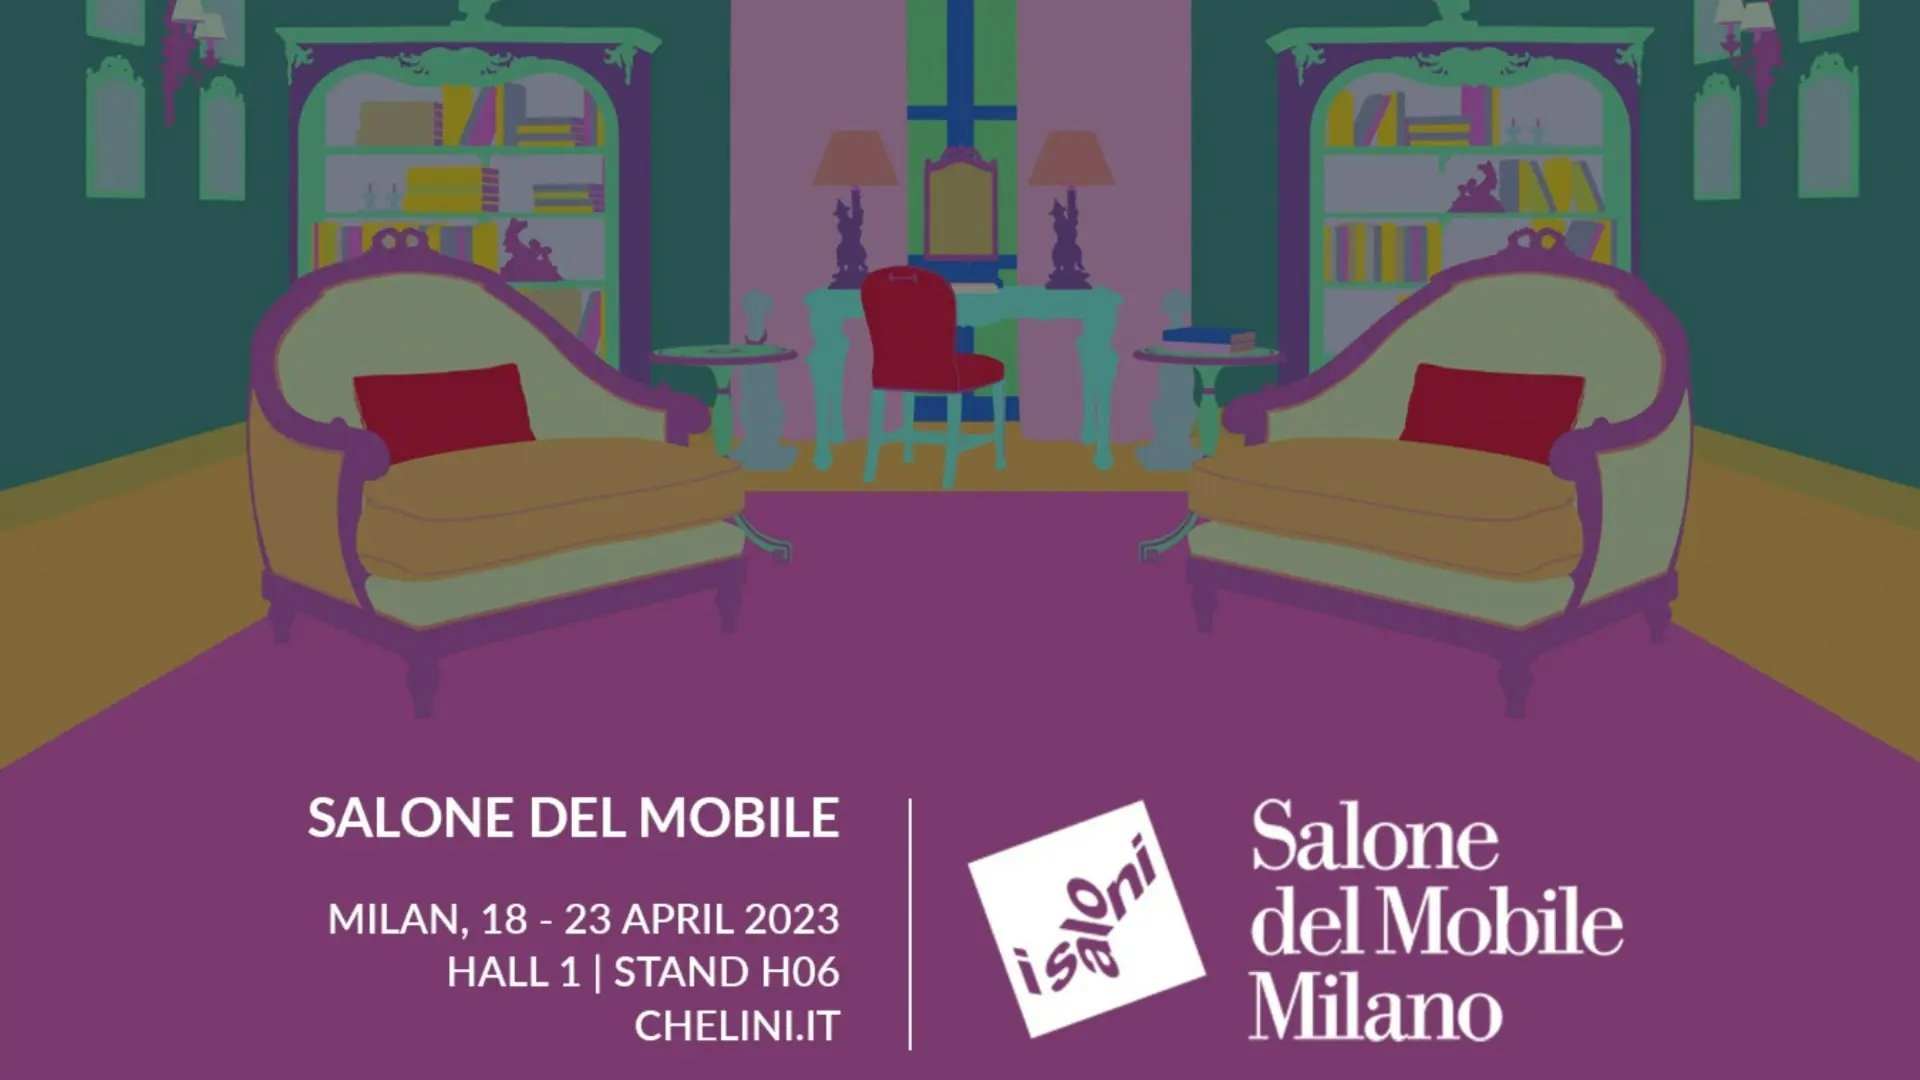 Milano| 7-12 June 2022 | Salone del Mobile | Hall 1 Stand D04